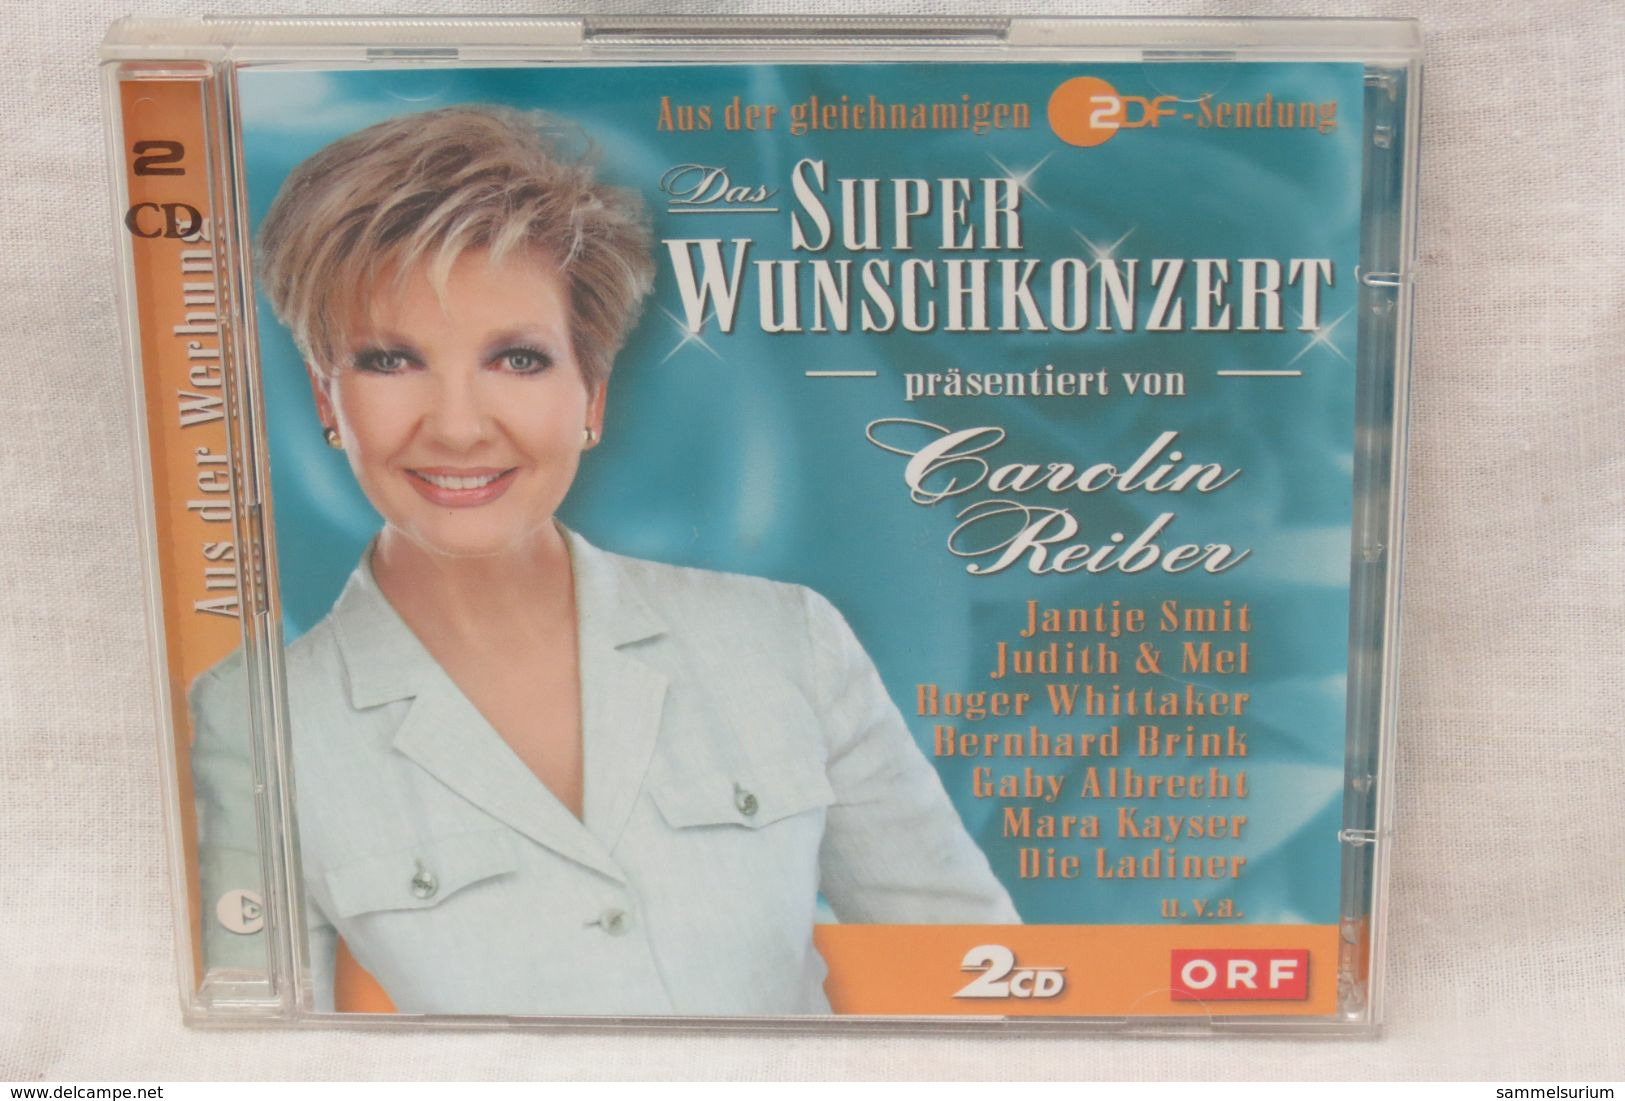 2 CDs "Carolin Reiber" Präsentiert Das Superwunschkonzert - Other - German Music